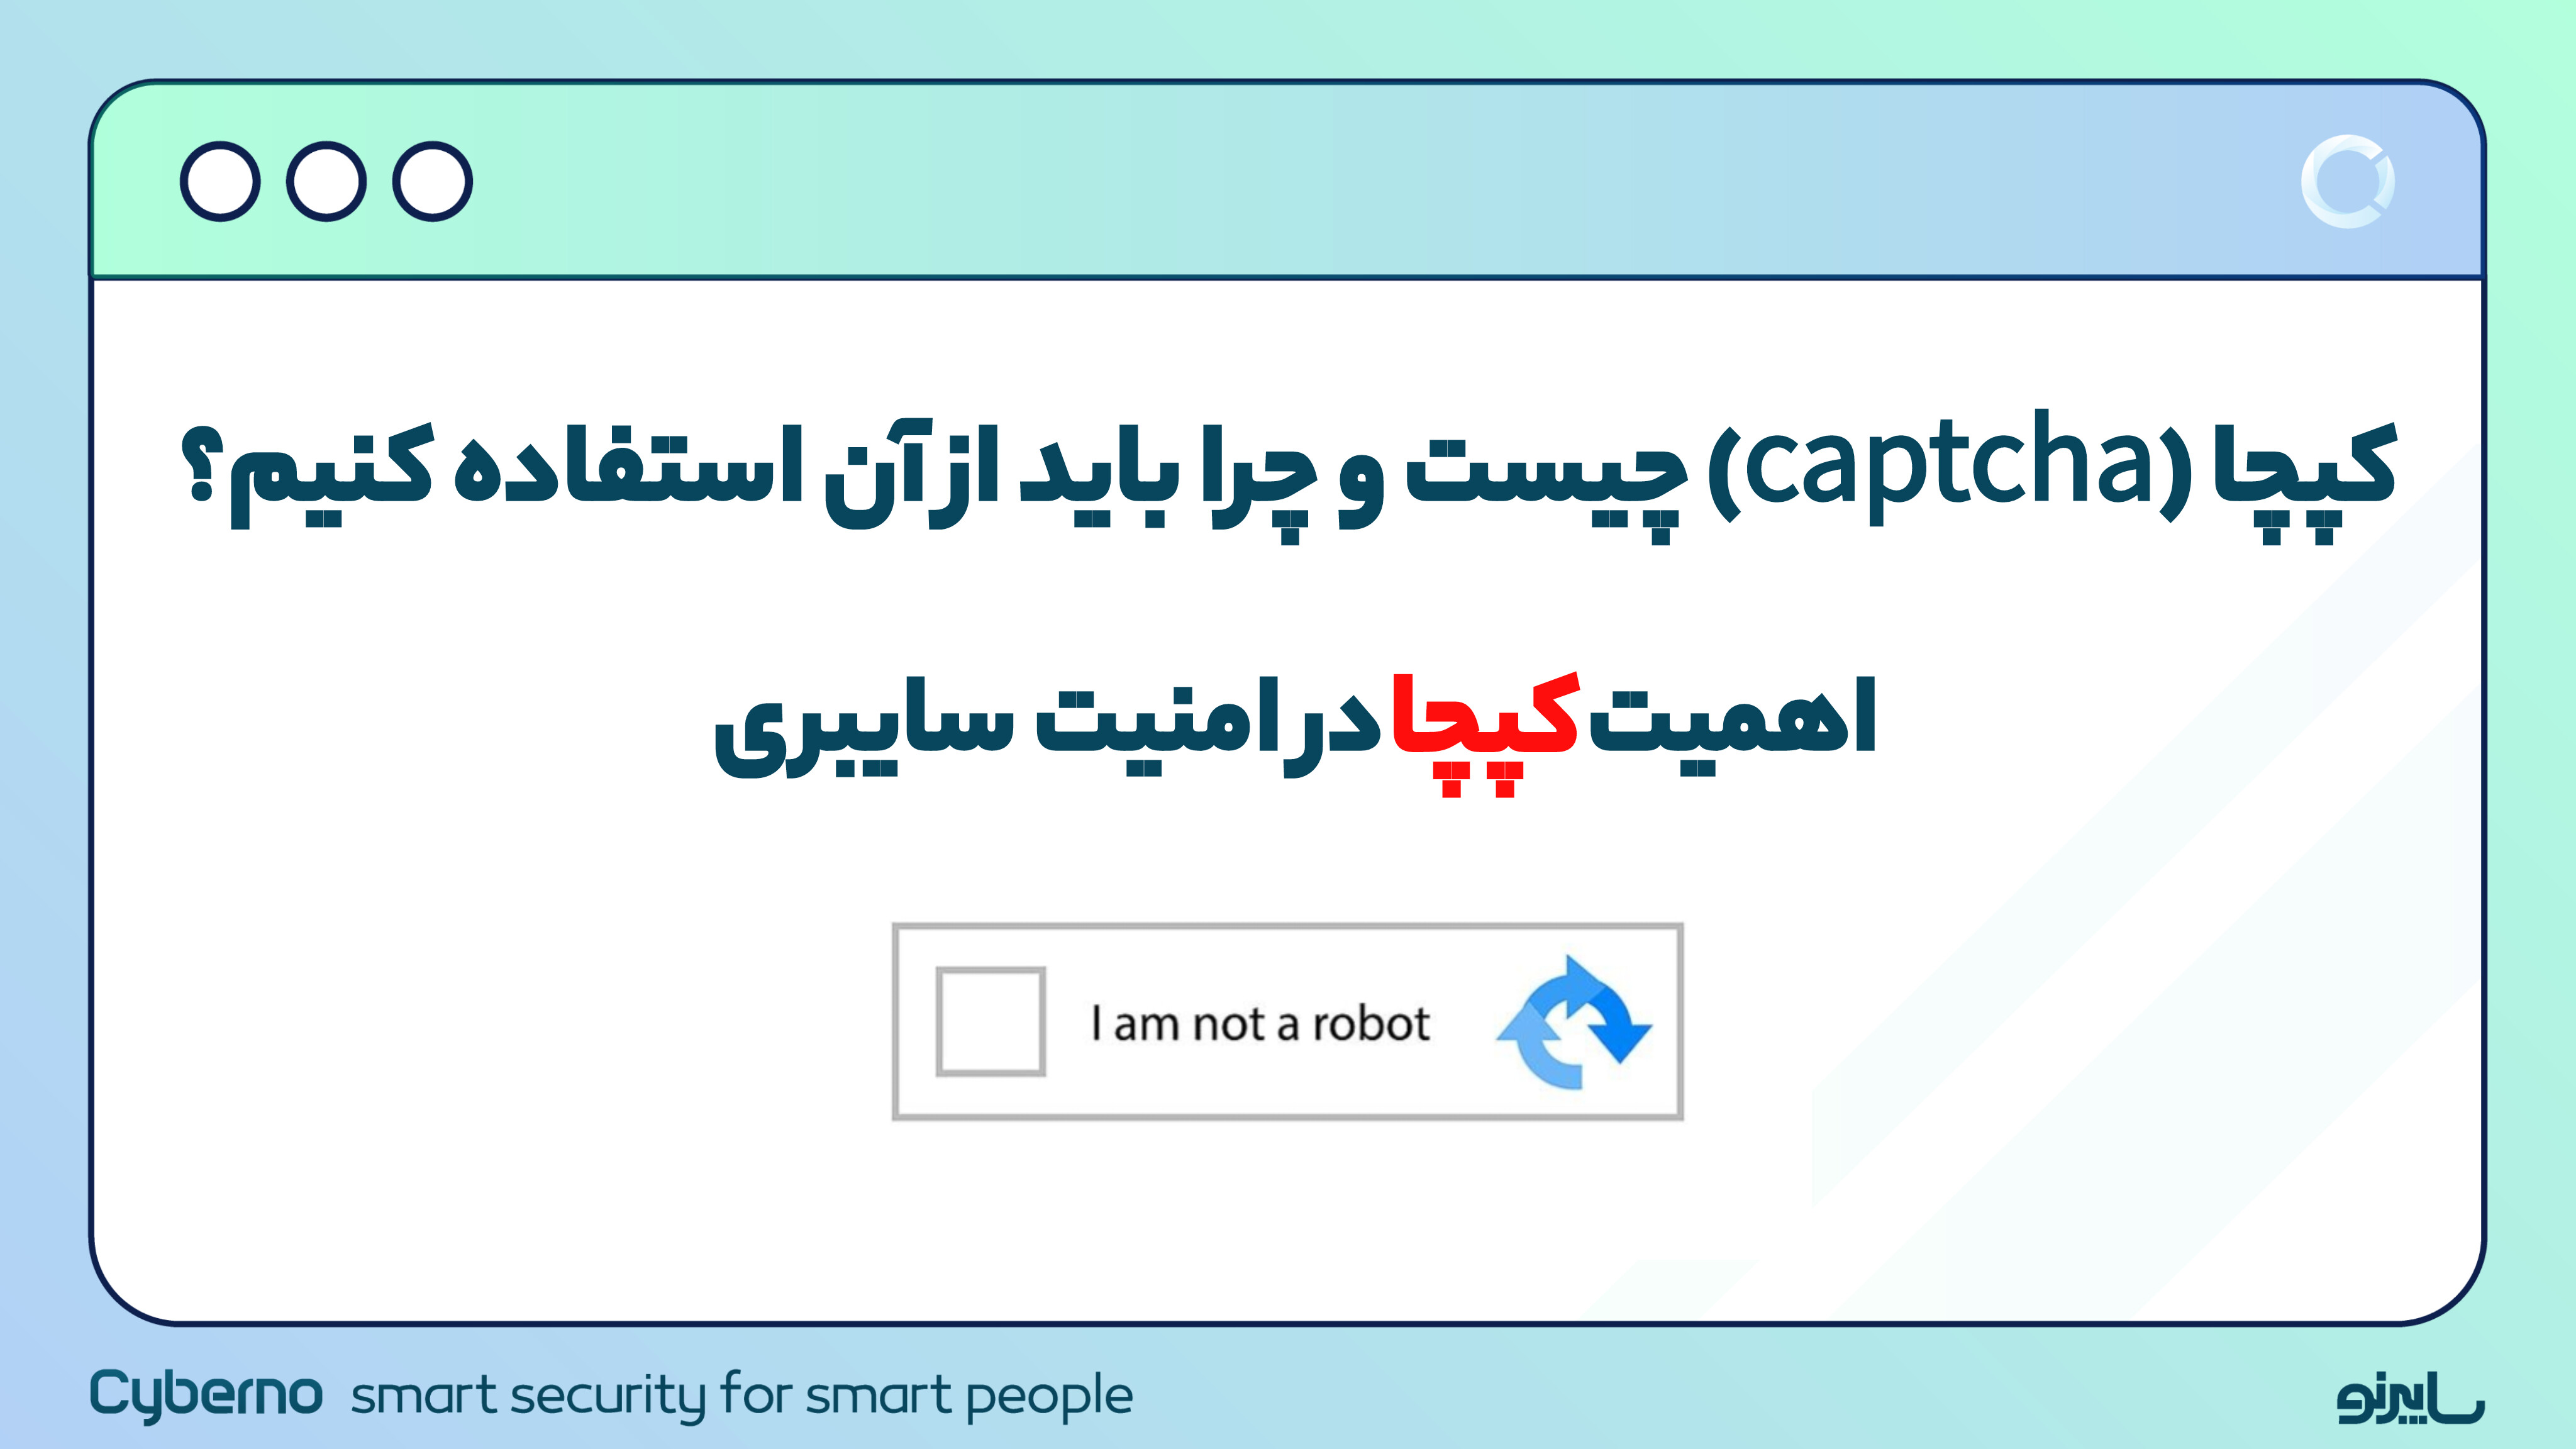 کپچا (CAPTCHA) چیست و چرا باید از آن استفاده کنیم؟ مزایا و معایب CAPTCHA